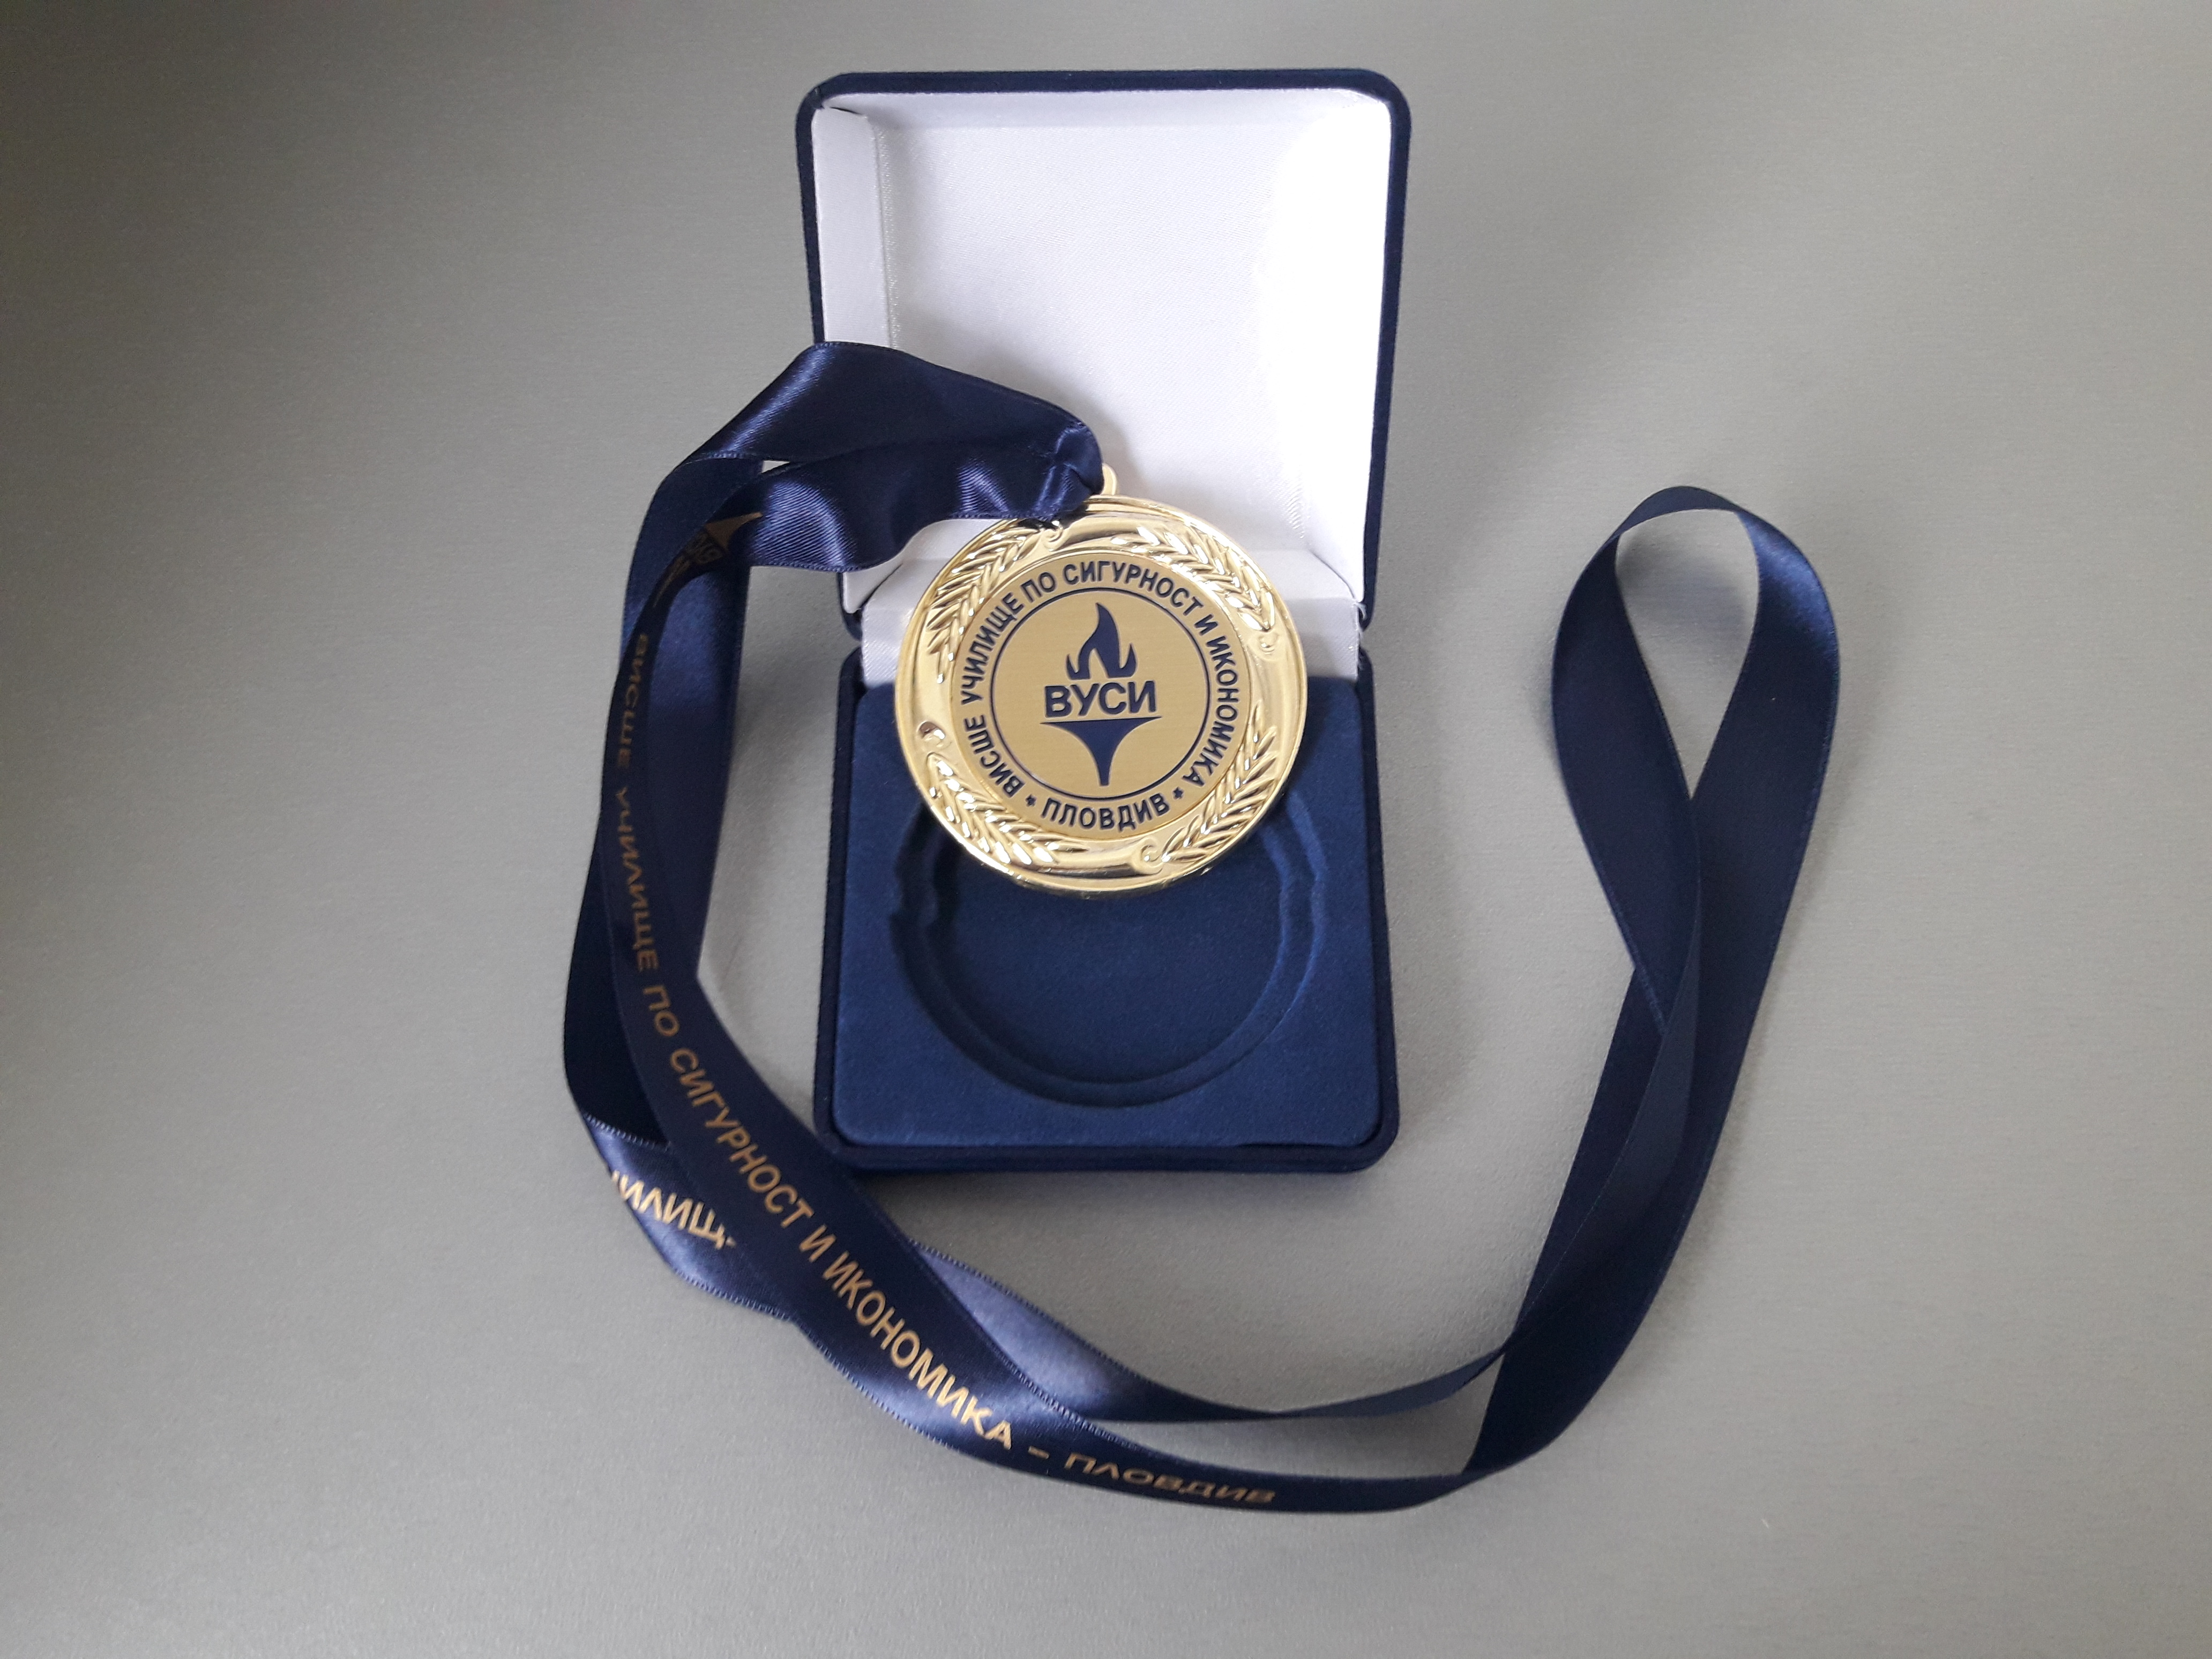 Почетен медал ВУСИ, 2018